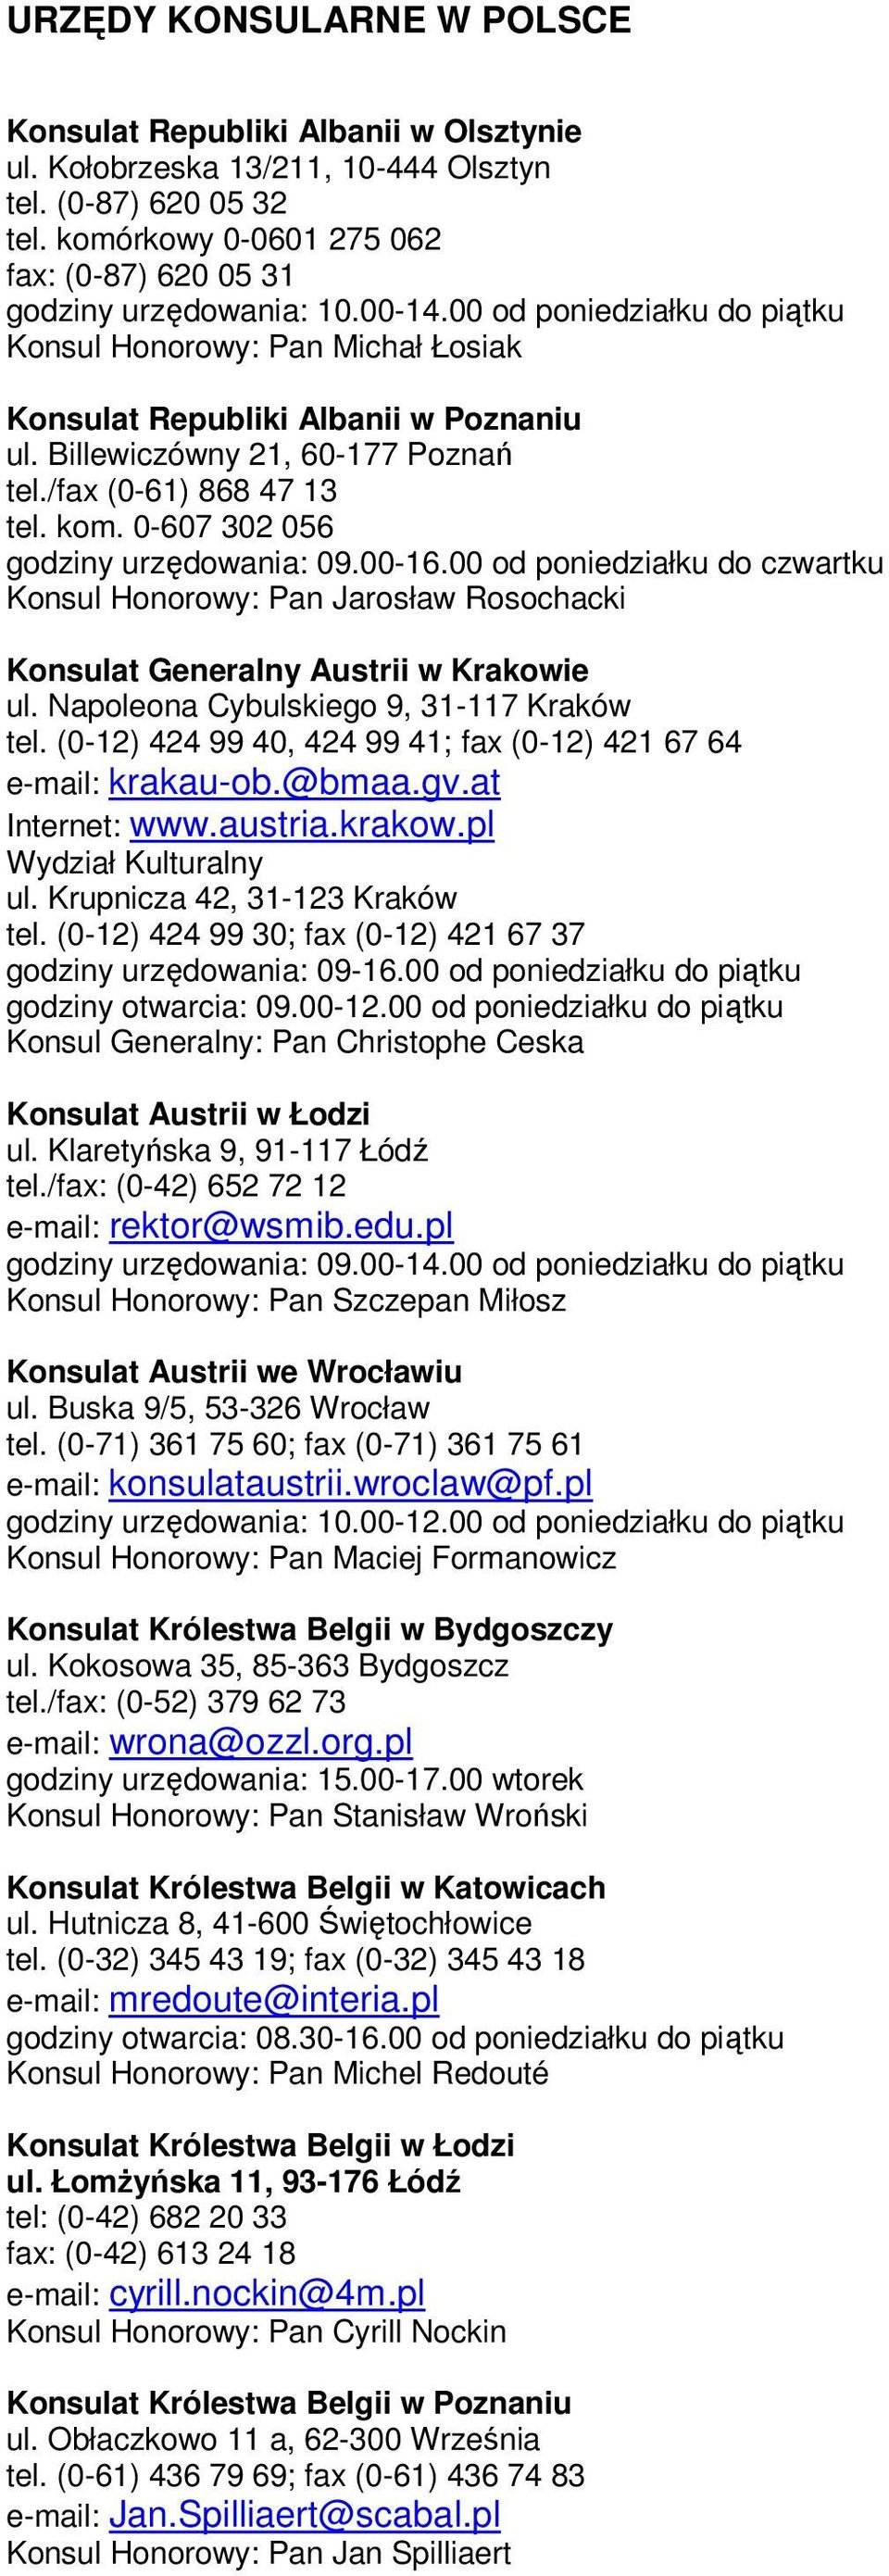 Billewiczówny 21, 60-177 Poznań tel./fax (0-61) 868 47 13 tel. kom. 0-607 302 056 godziny urzędowania: 09.00-16.